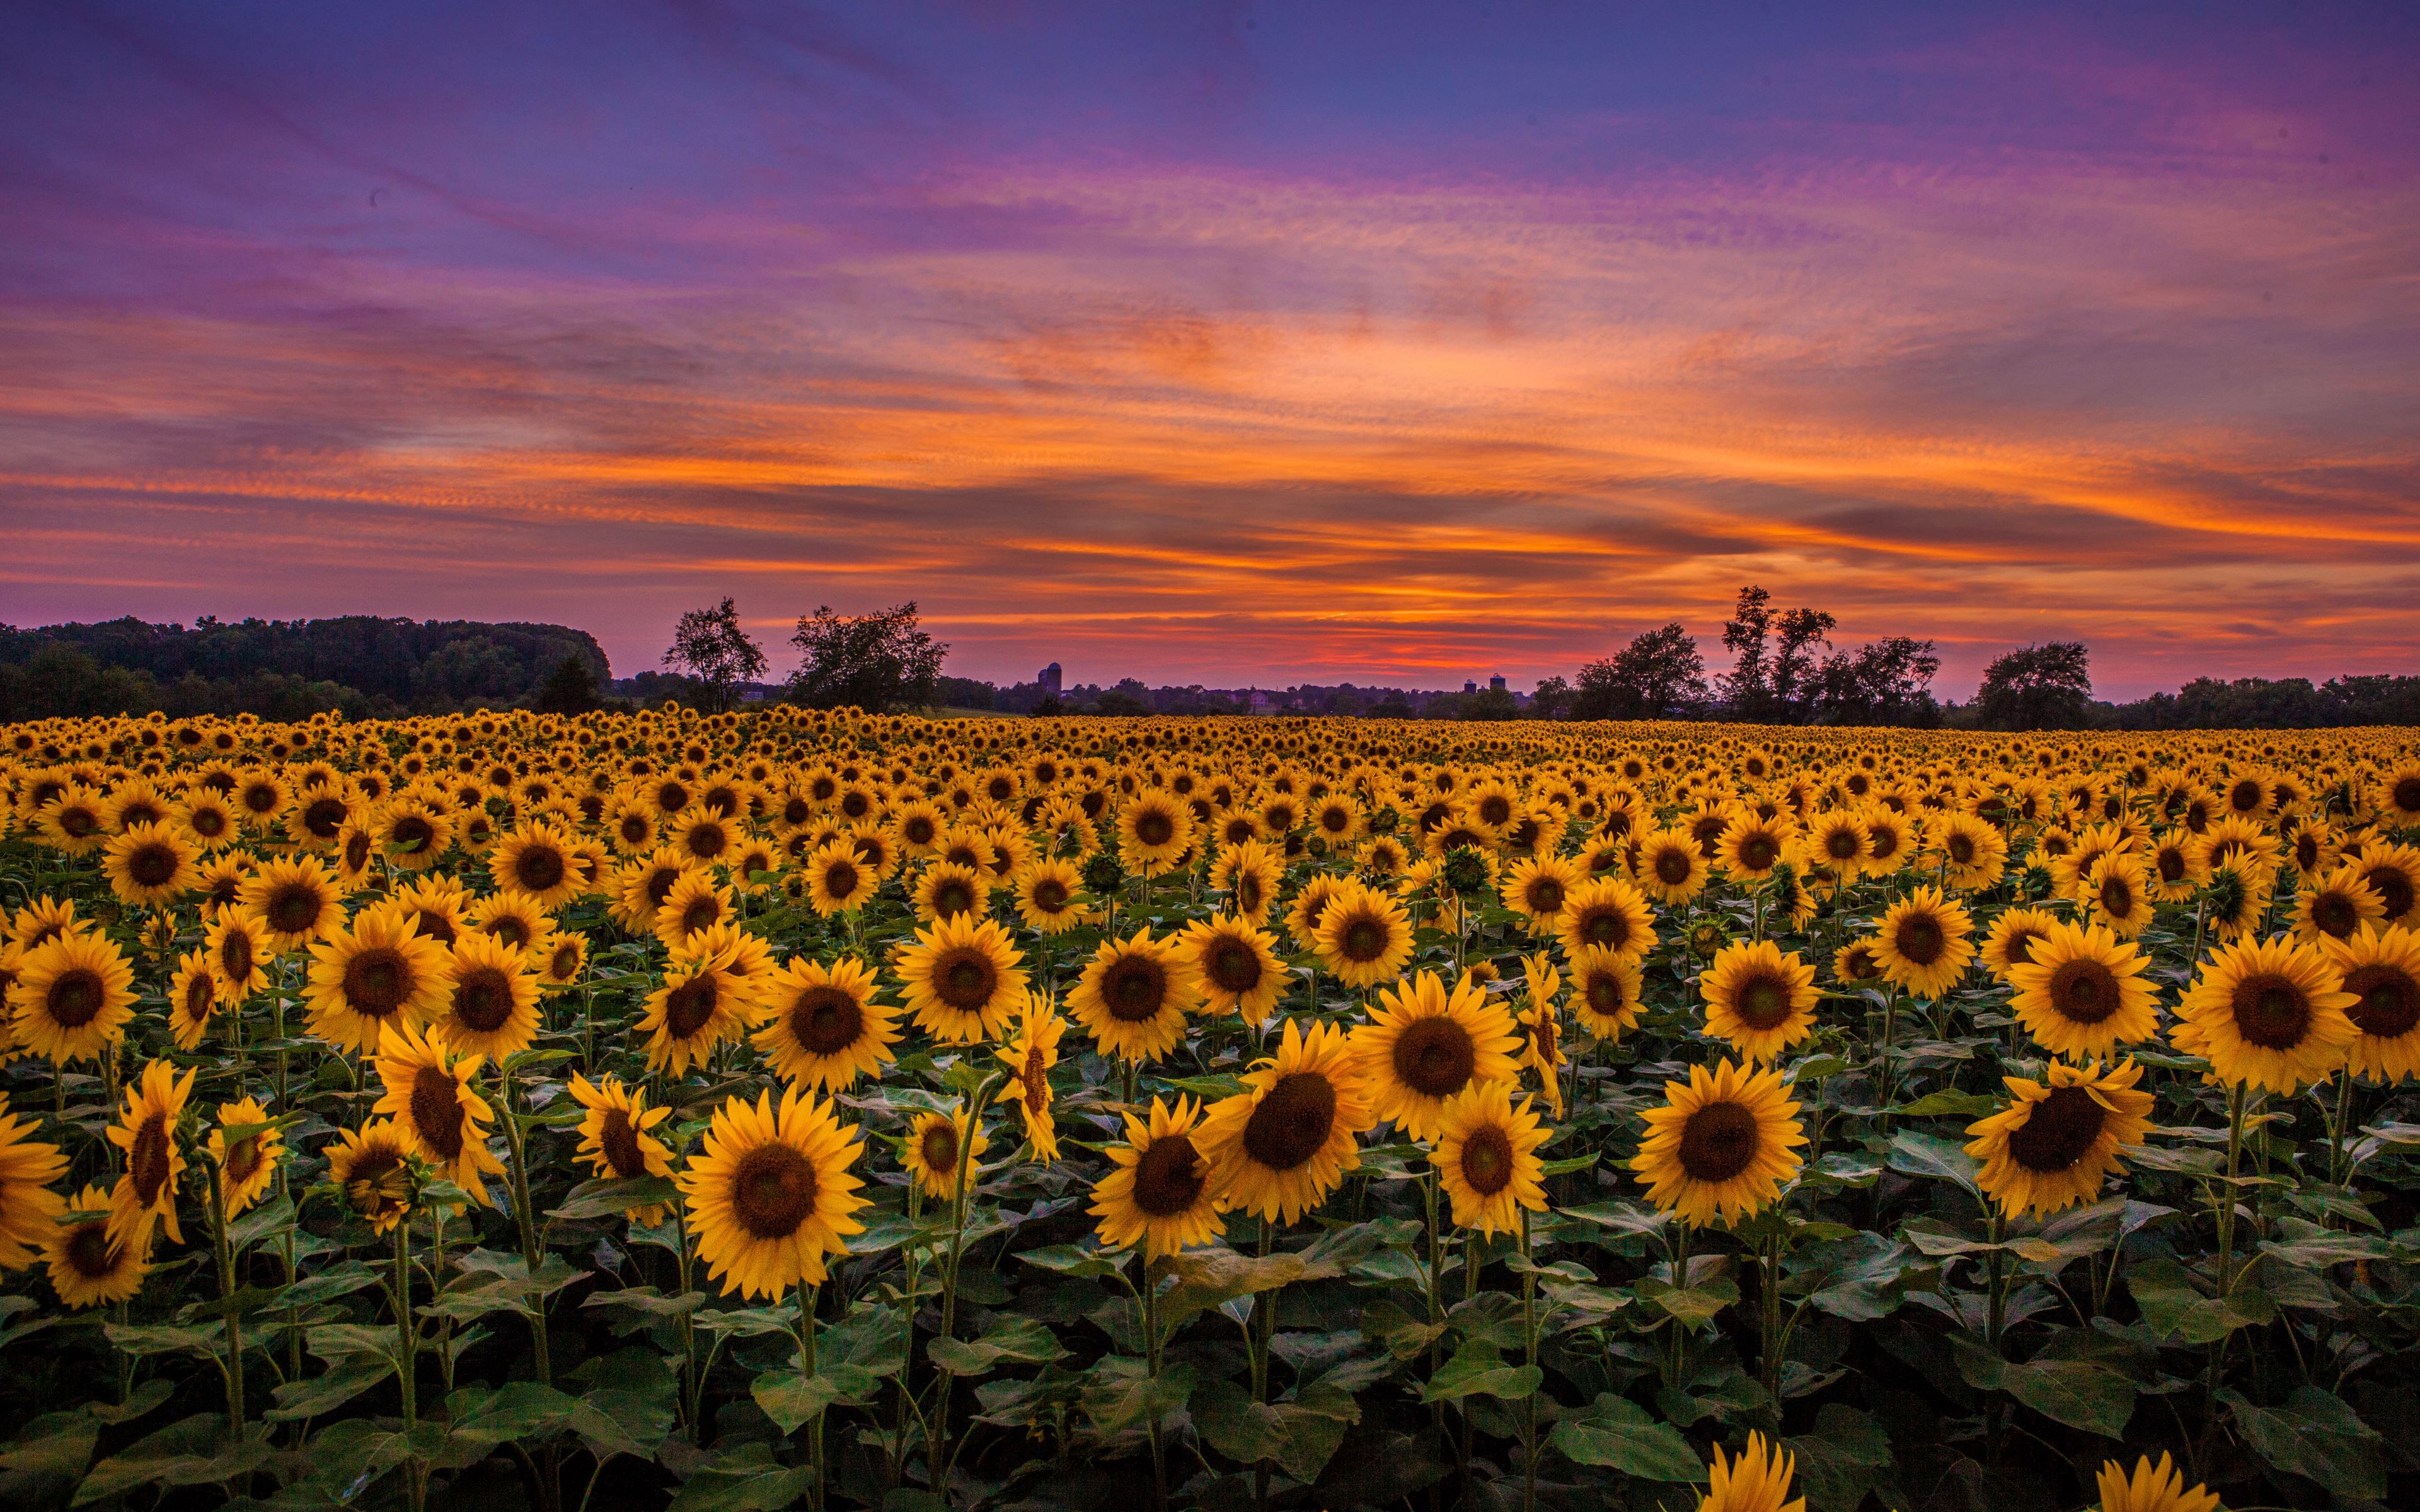 Download wallpaper 3840x2400 sunflowers, field, sunset, sky